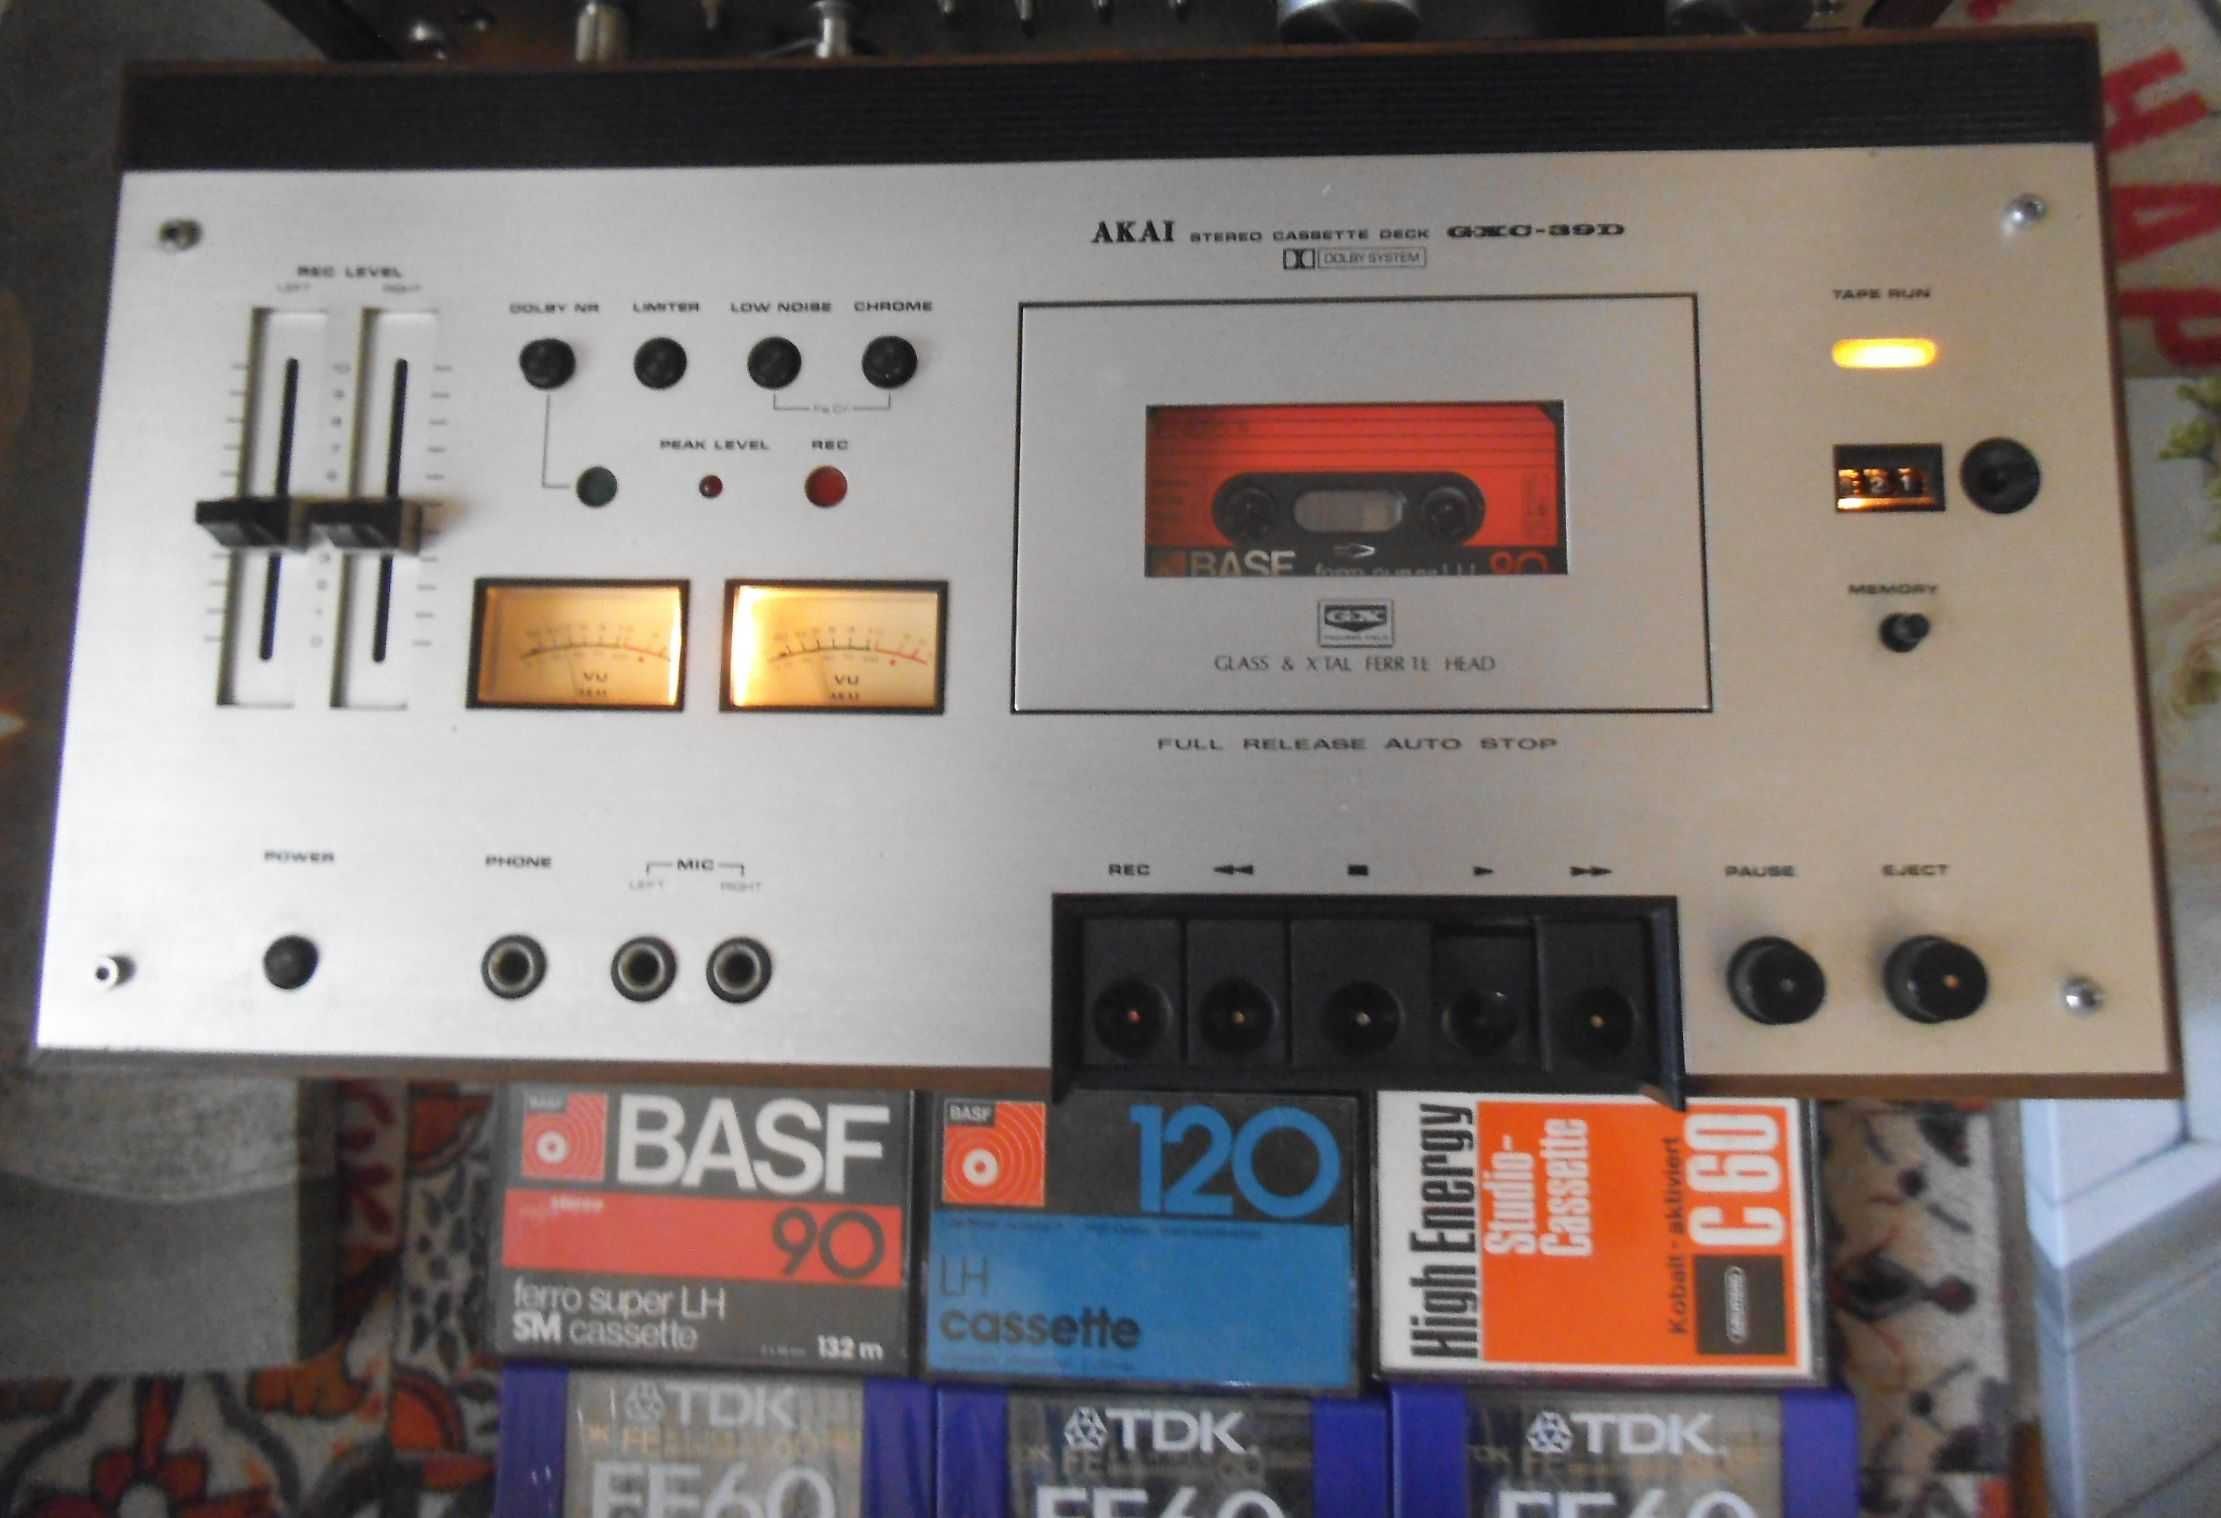 Deck AKAI GXC-39D Stereo Cassette Deck